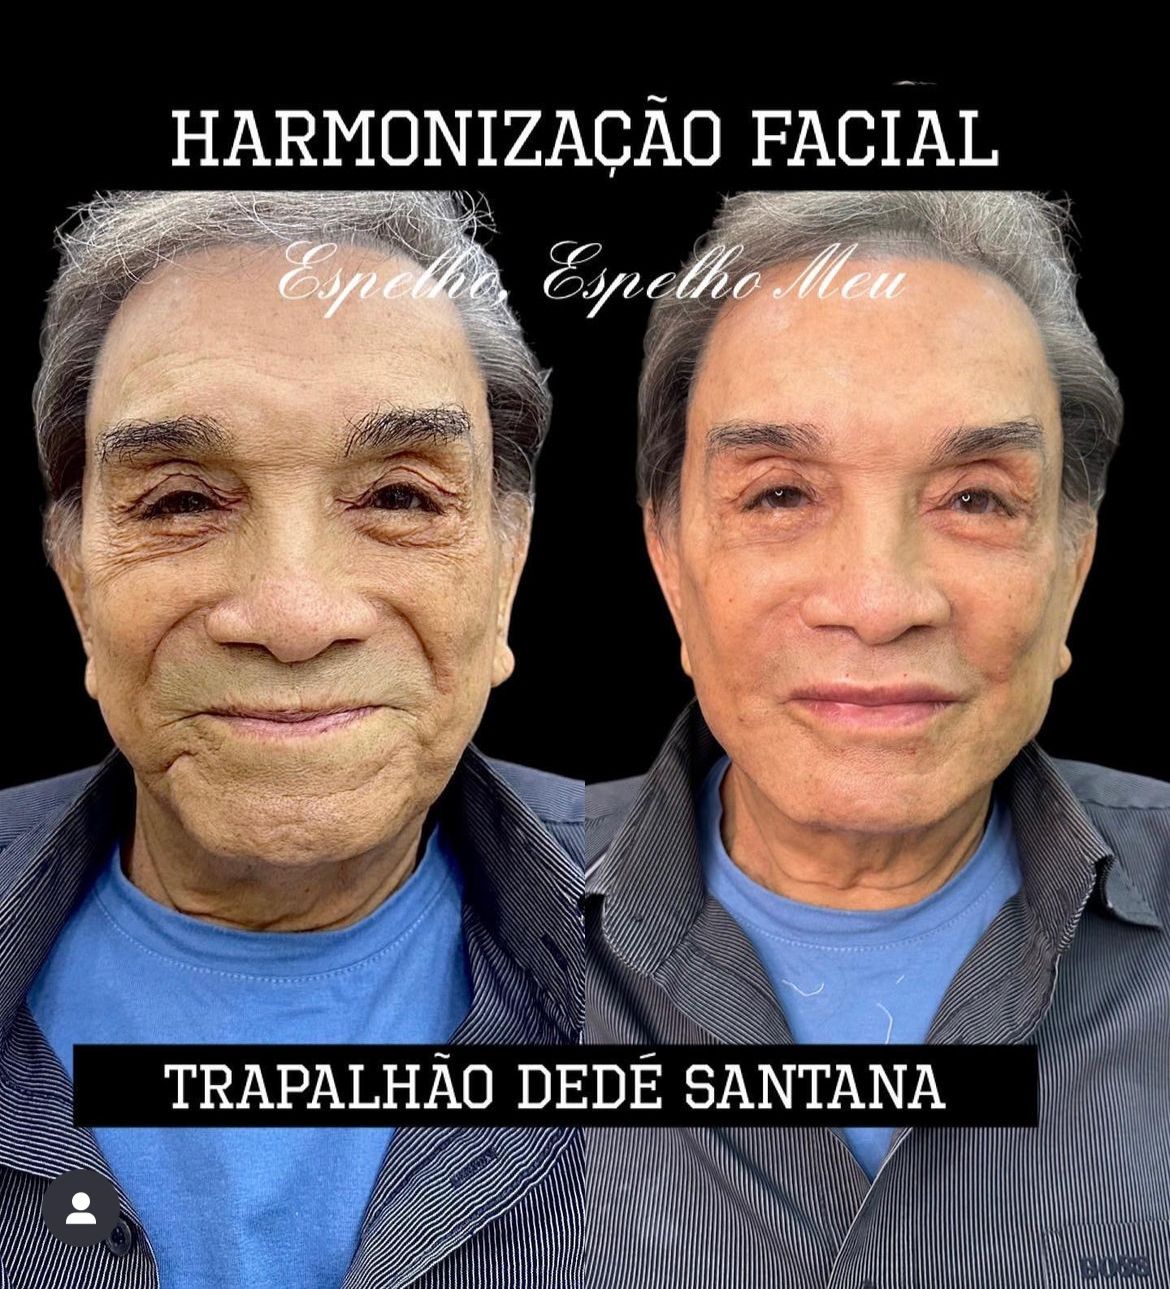 Dedé Santana, de 'Os Trapalhões', passa por procedimento no rosto e foto prova que ele rejuvenesceu 30 anos - Foto Reprodução Instagram